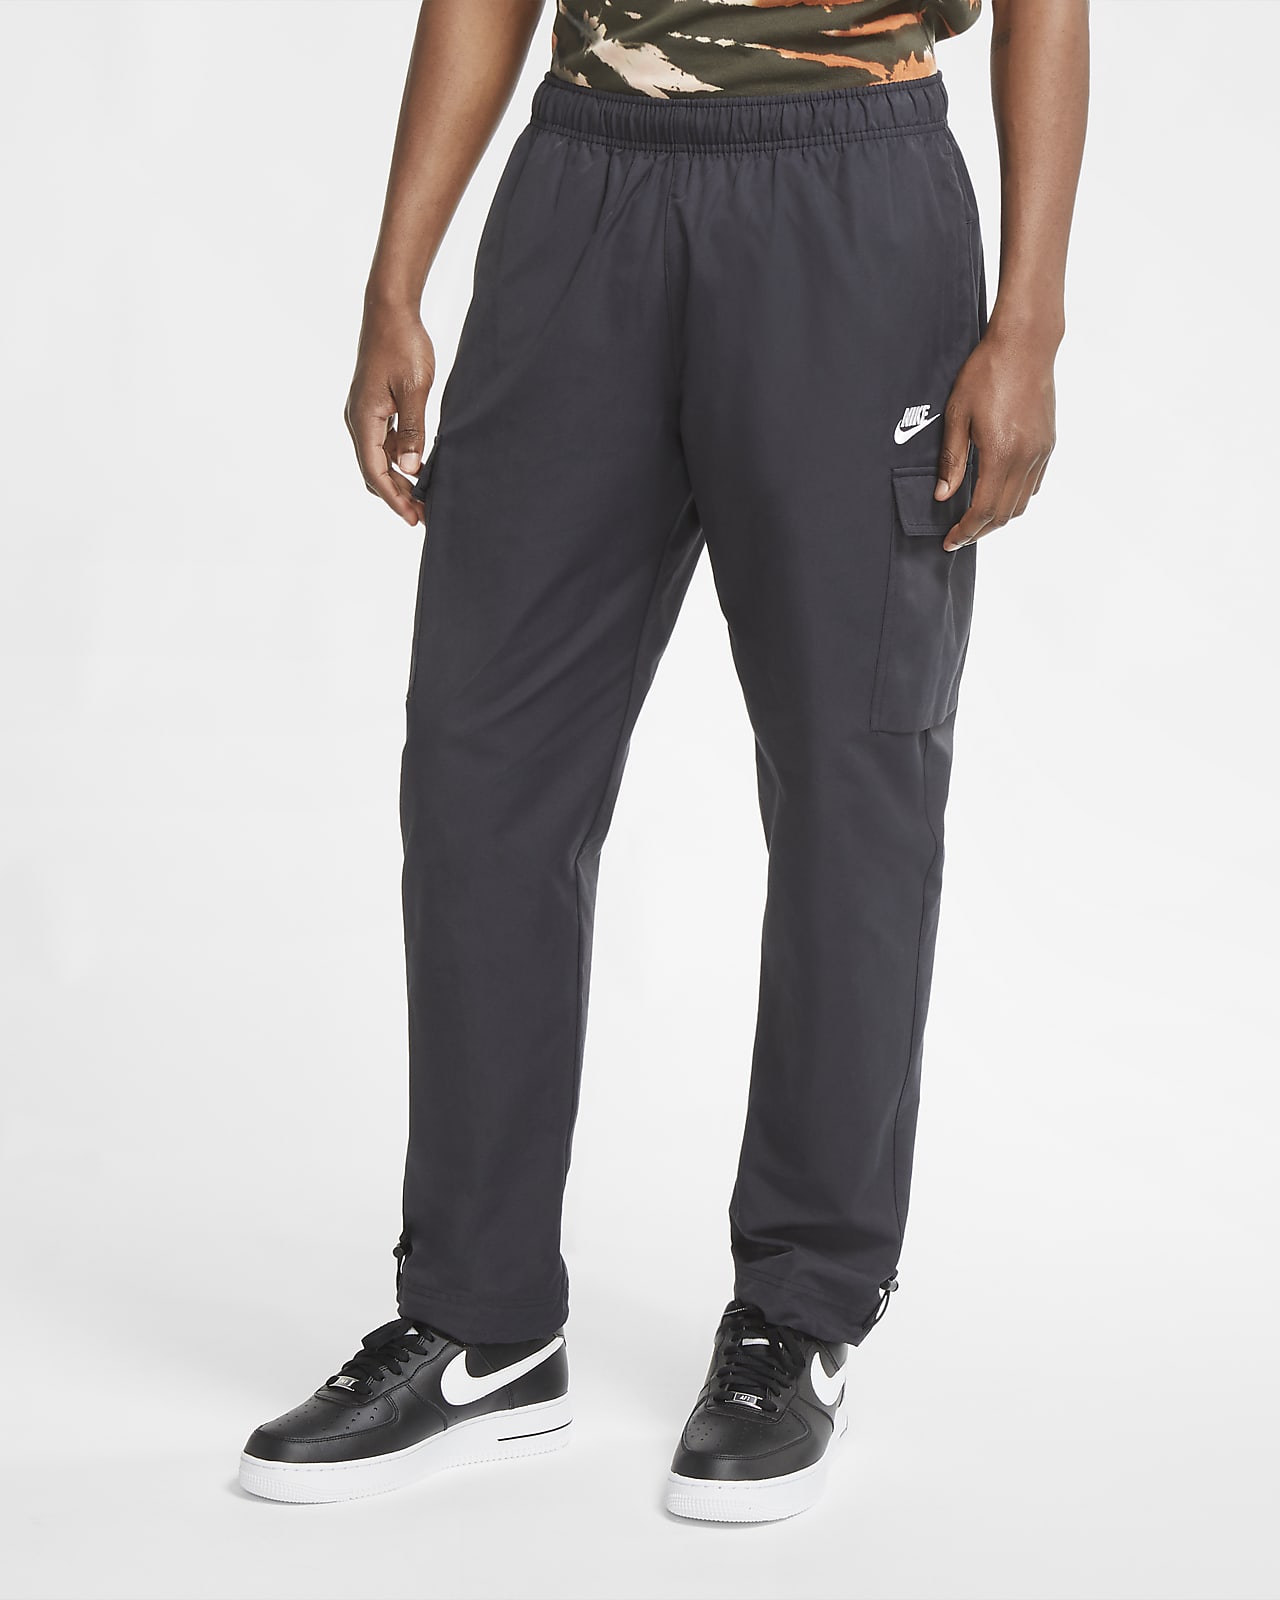 Nike Sportswear Men's Woven Pants. Nike.com